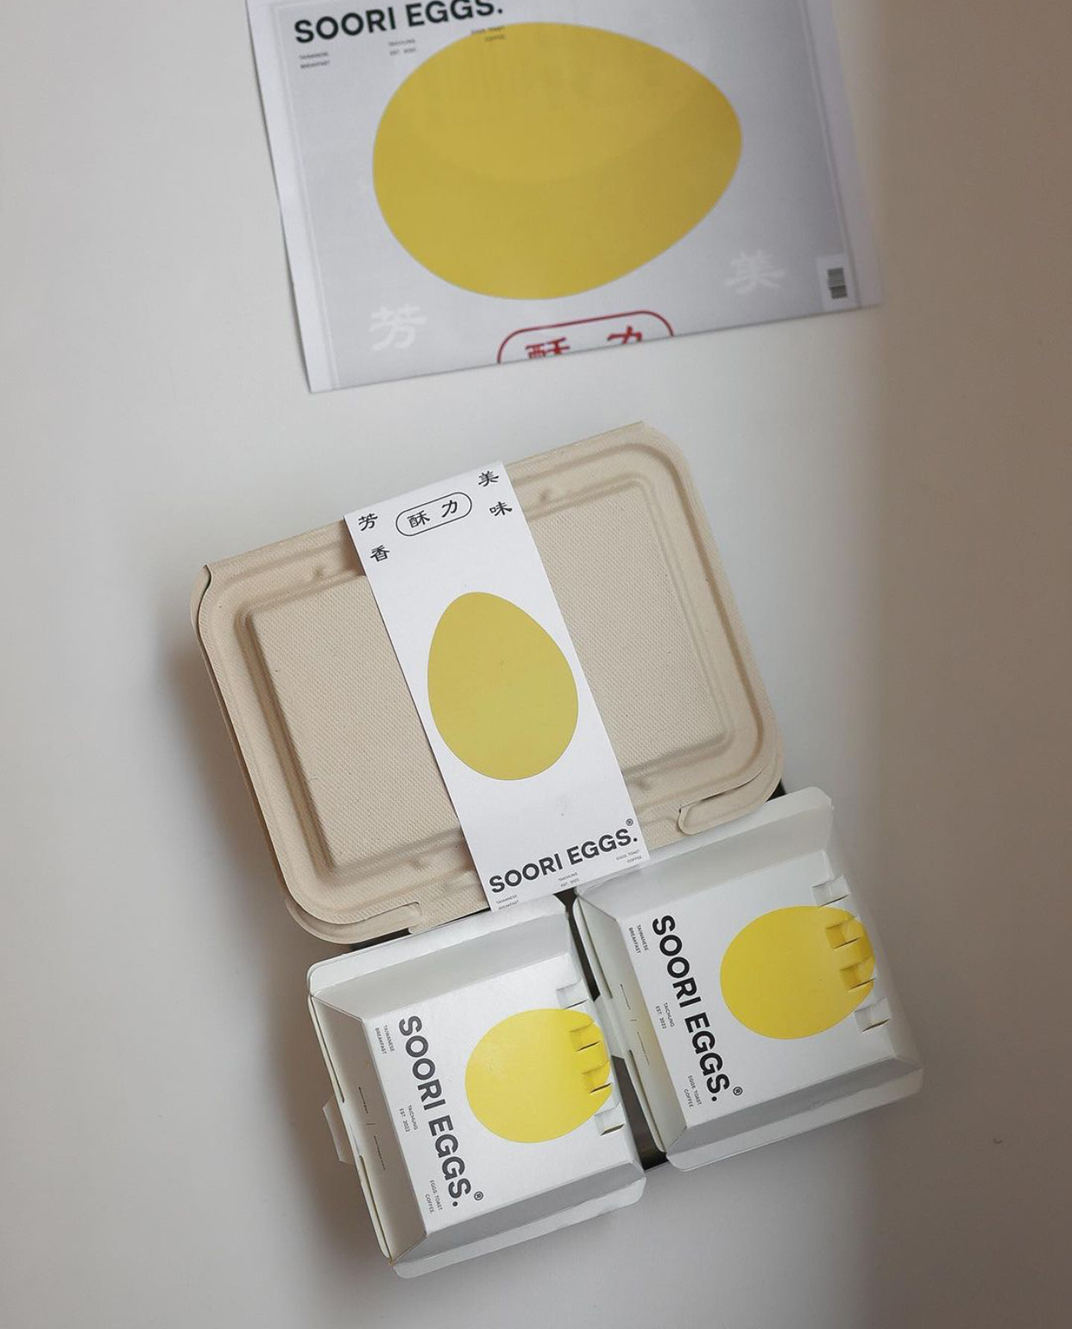 Soori Eggs 酥力蛋饼 台湾 早餐 鸡蛋 装置 菜单设计 logo设计 vi设计 空间设计